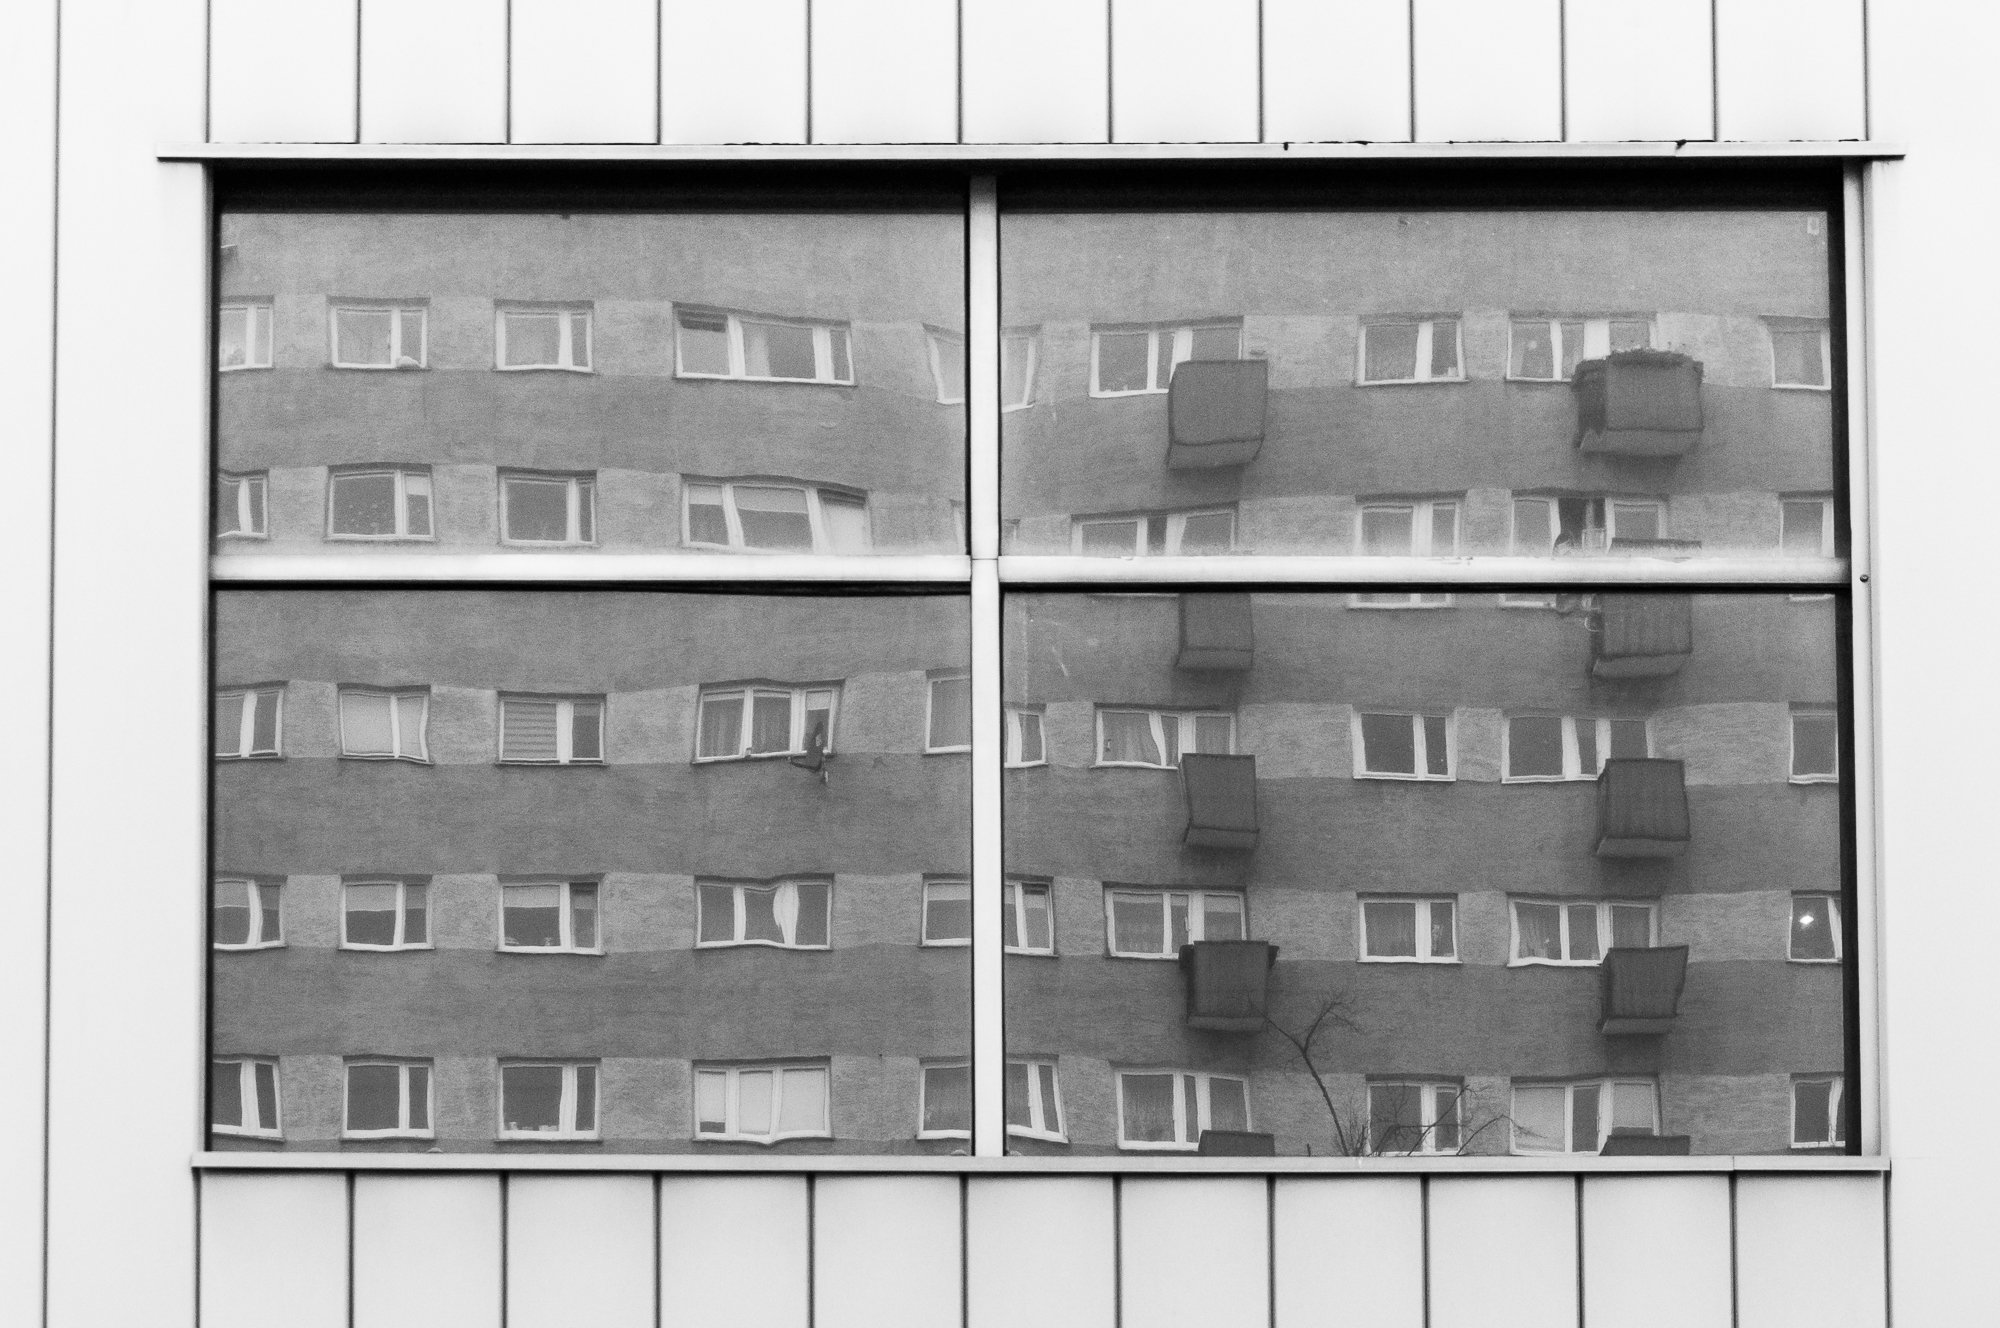 Adam Mazek Photography Warsaw 2018. Minimalism. Reflection. Block of flats. Geometry.